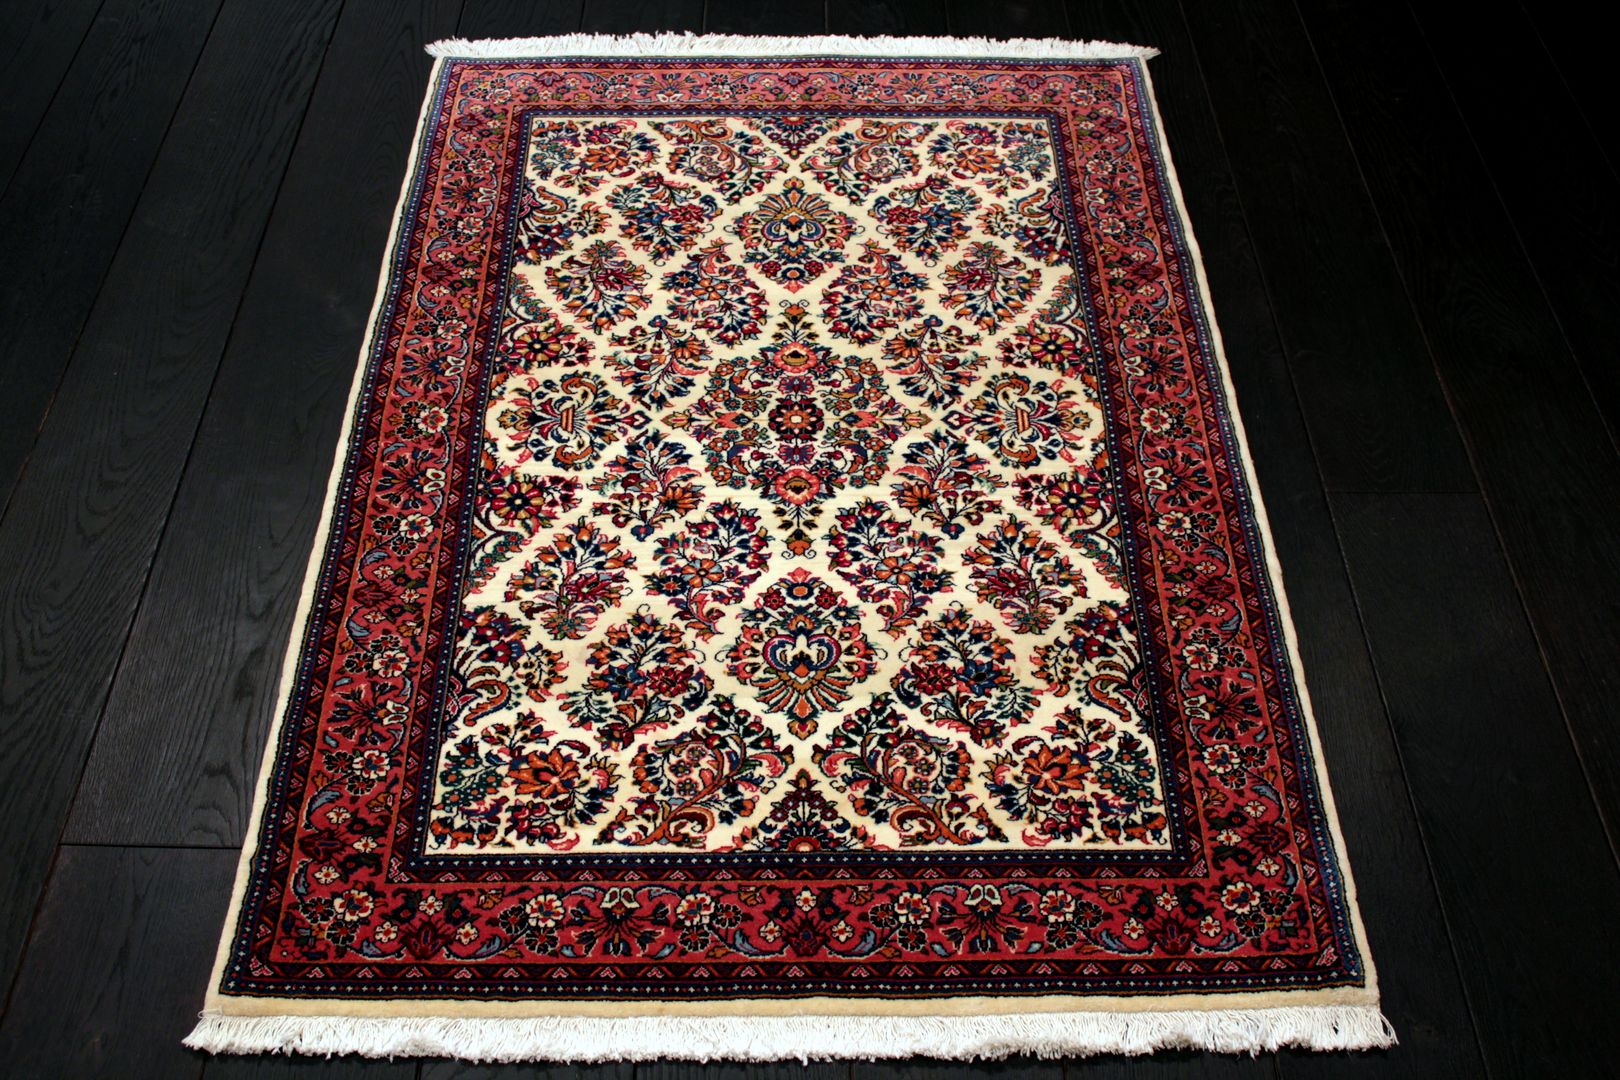 Irańskie dywany tradycyjne, Sarmatia Trading Sarmatia Trading 地板 羊毛 Orange 地毯